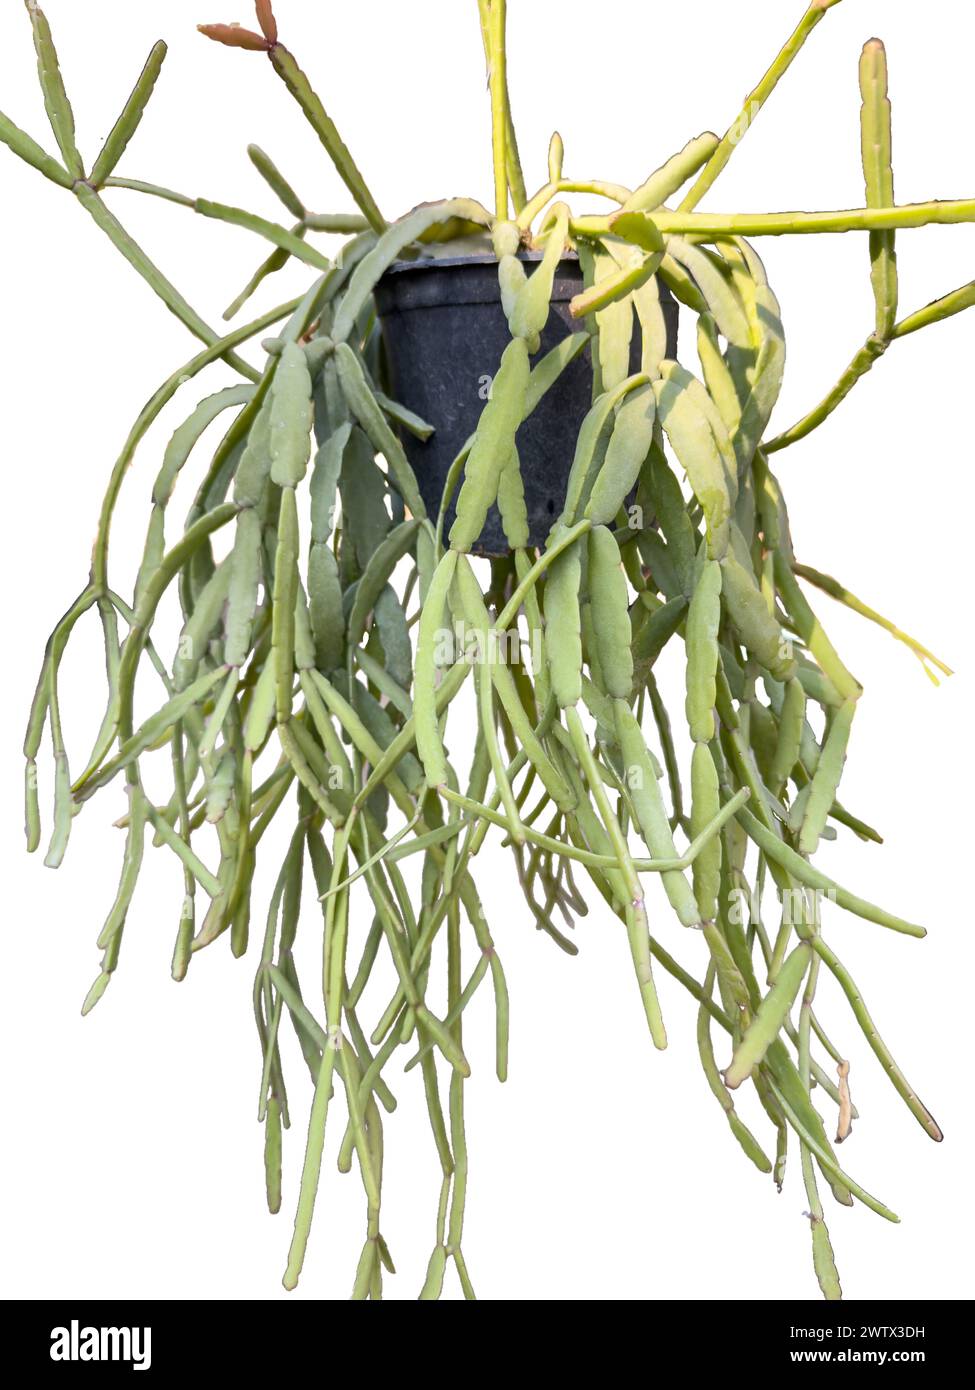 Cactus épiphyte de Rhipsalis dans un pot suspendu sur fond blanc isolé Banque D'Images